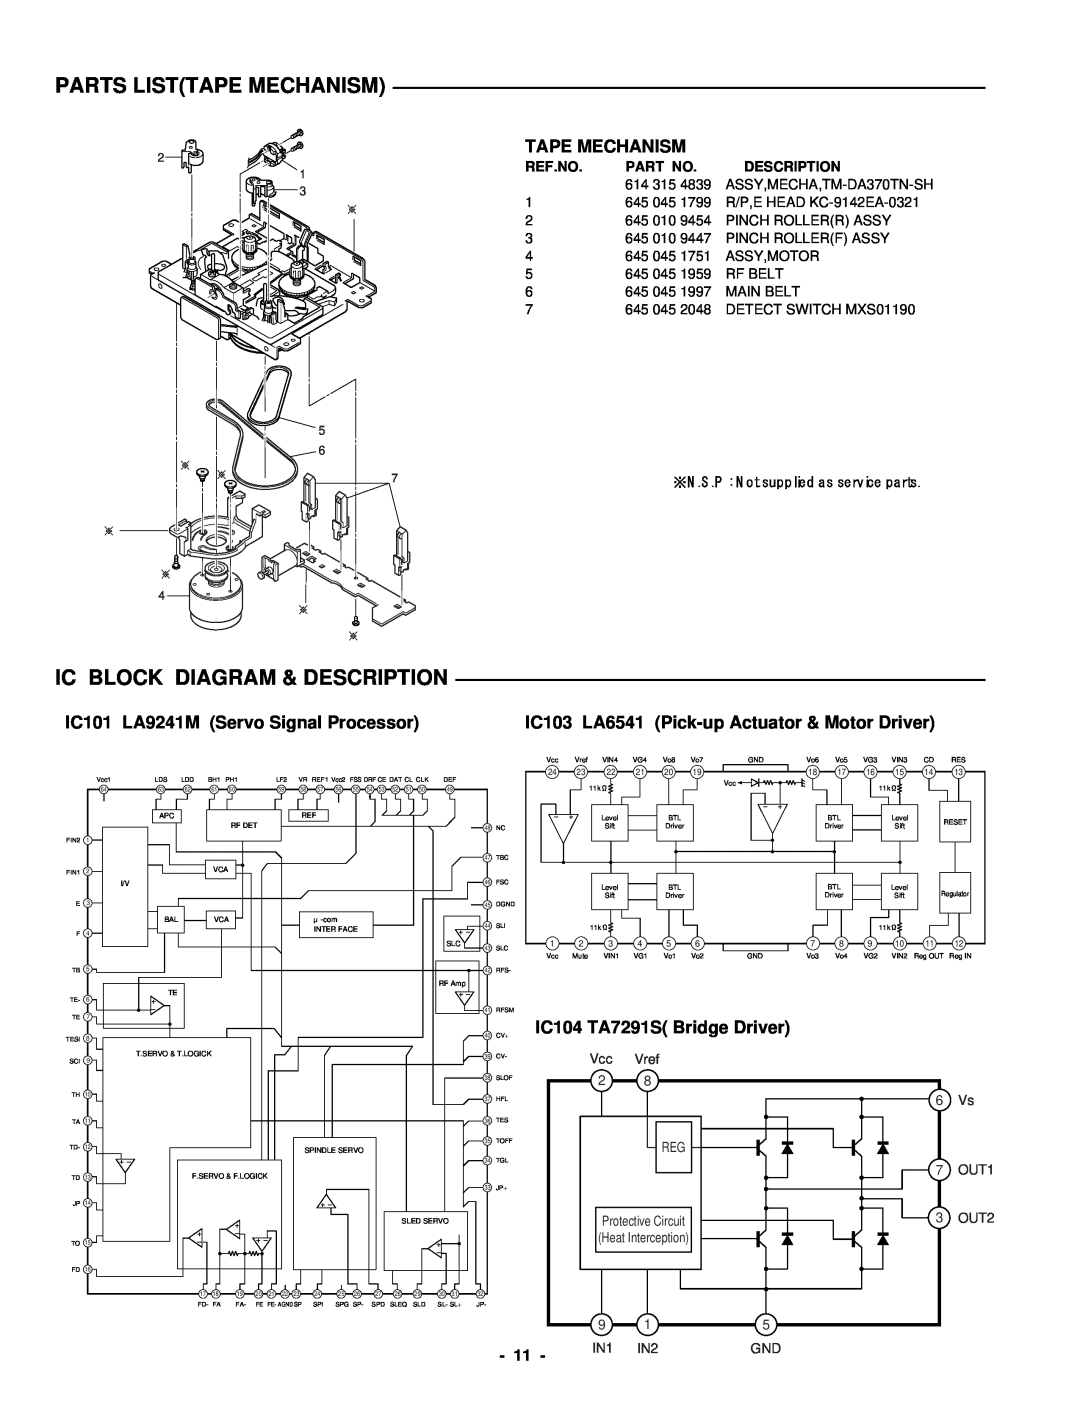 Sanyo DC-DA370 Parts Listtape Mechanism, Ic Block Diagram & Description, Tape Mechanism, IC104 TA7291S Bridge Driver 